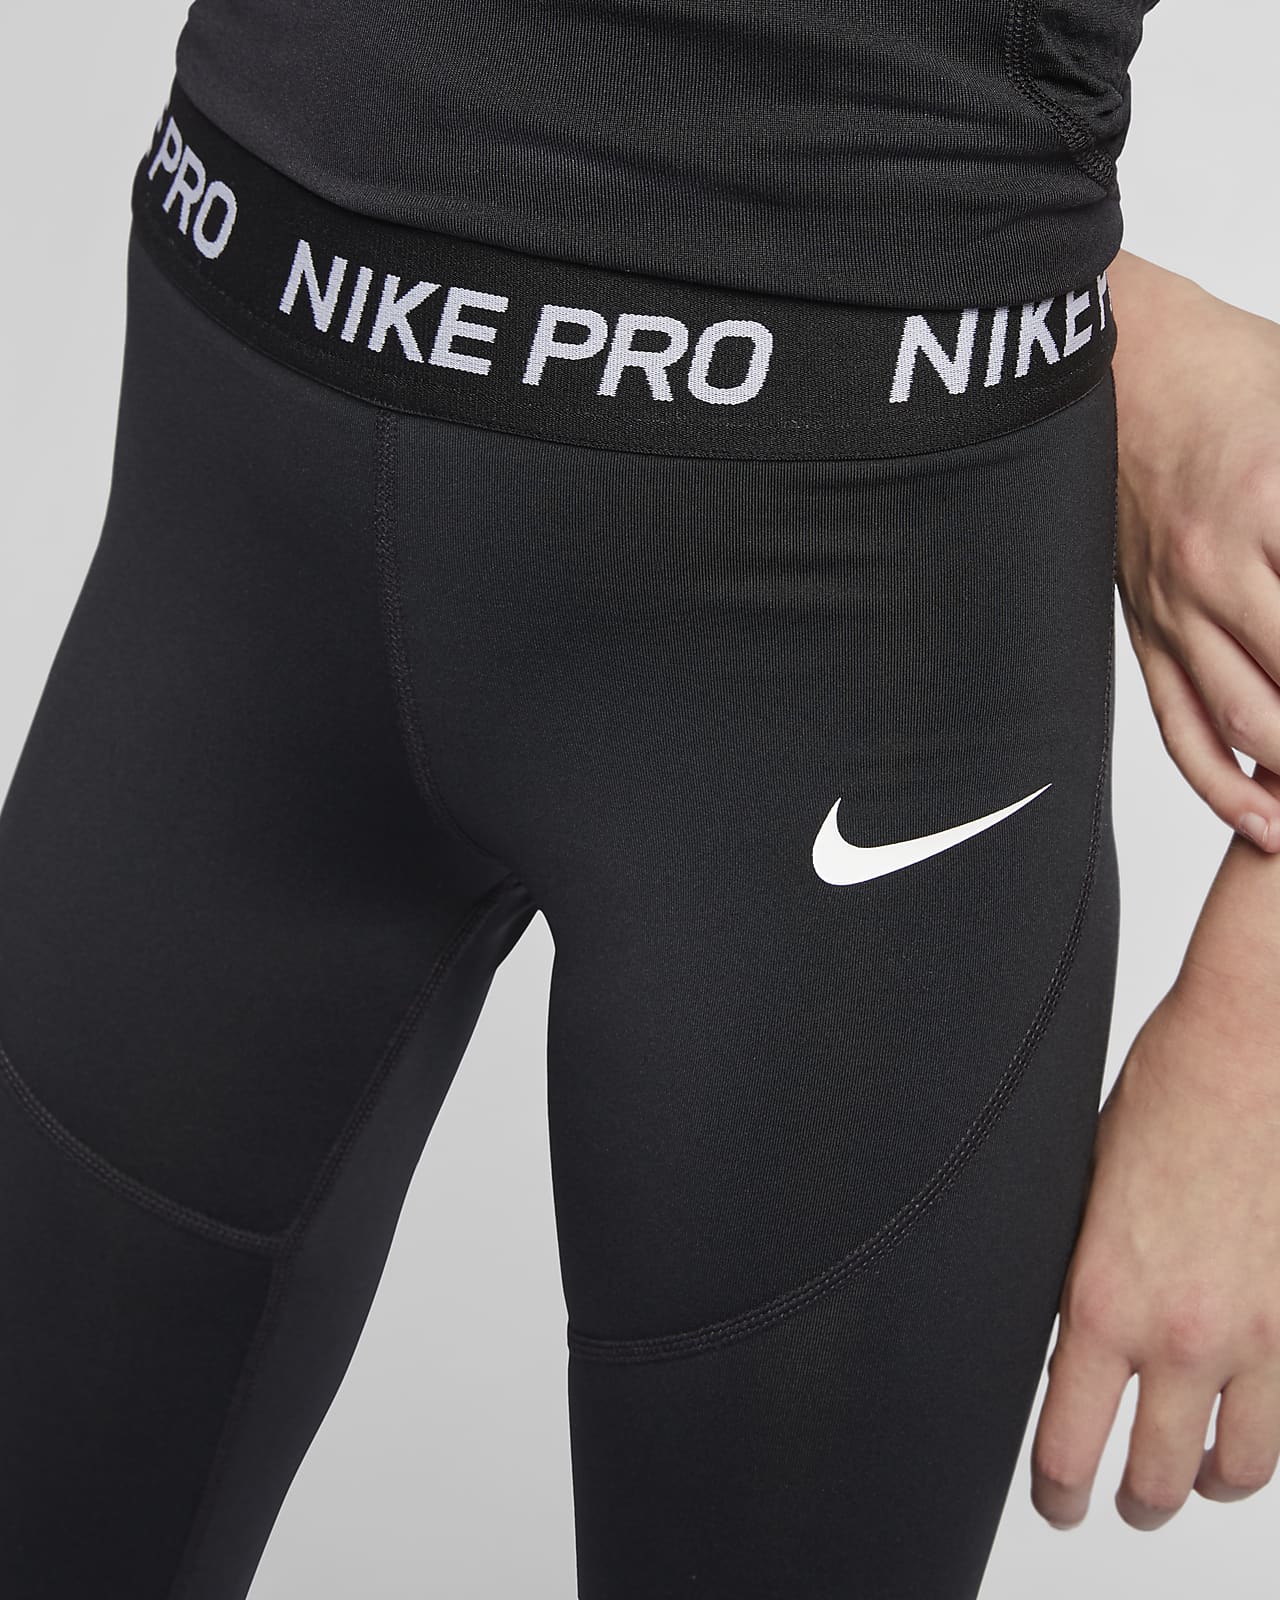 Buy > nike pro leggings gray > in stock